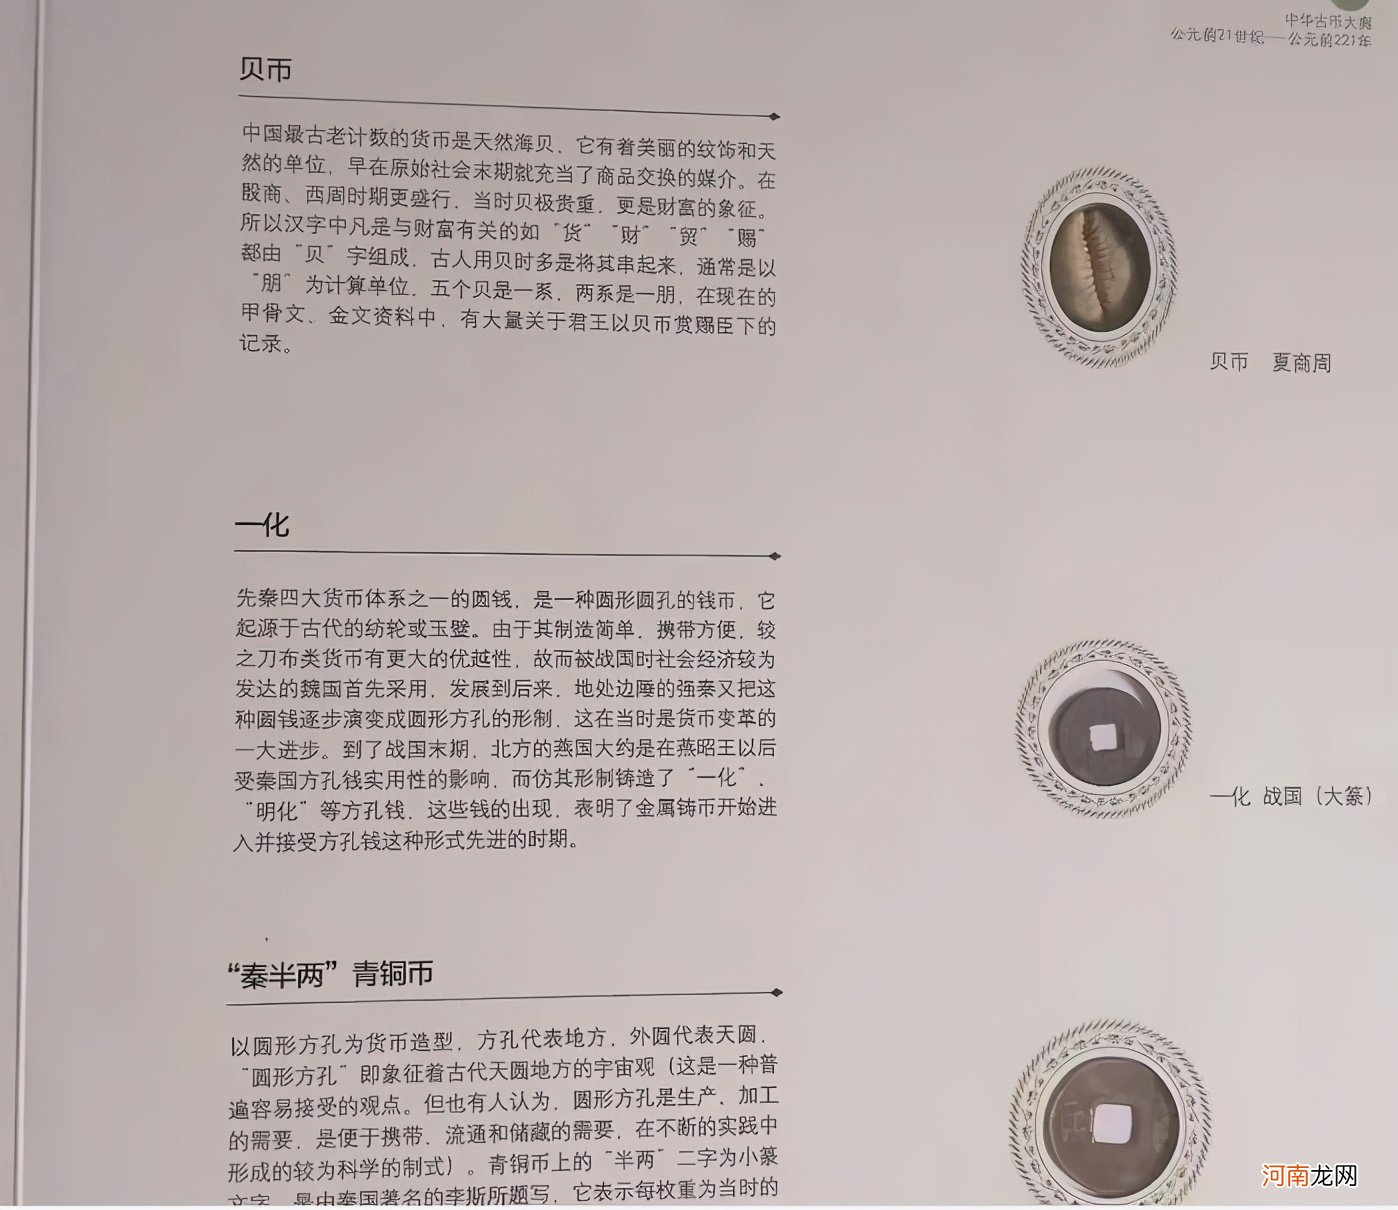 中华古币大典 古钱币图片全集图册